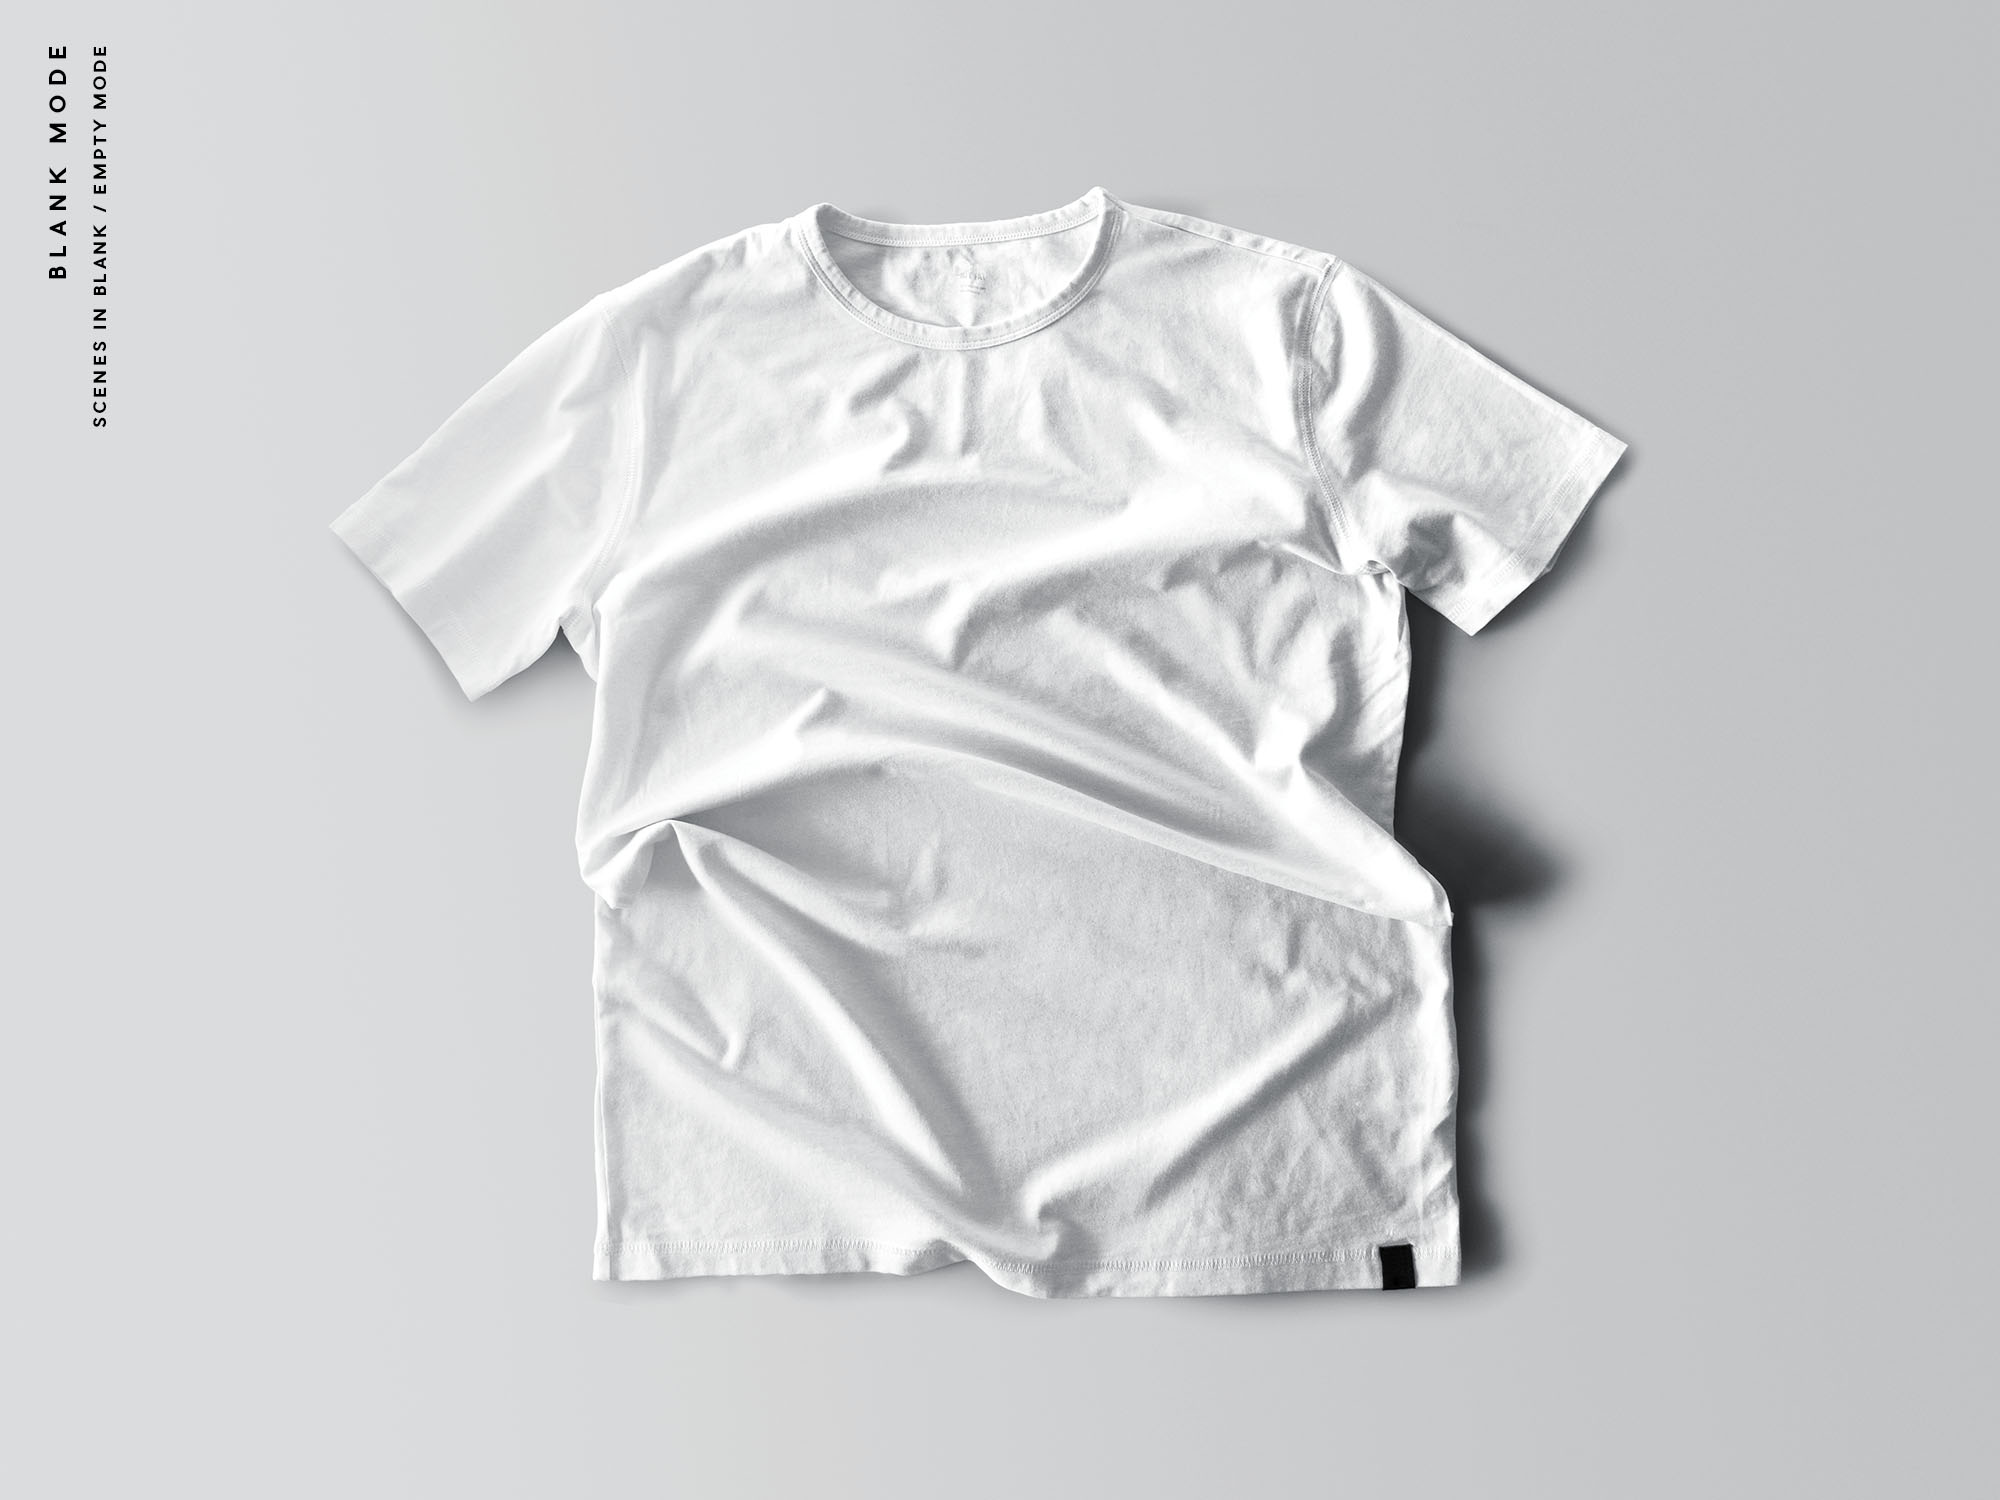 街头潮牌T恤服饰设计贴图展示样机模板 9 T-Shirt M